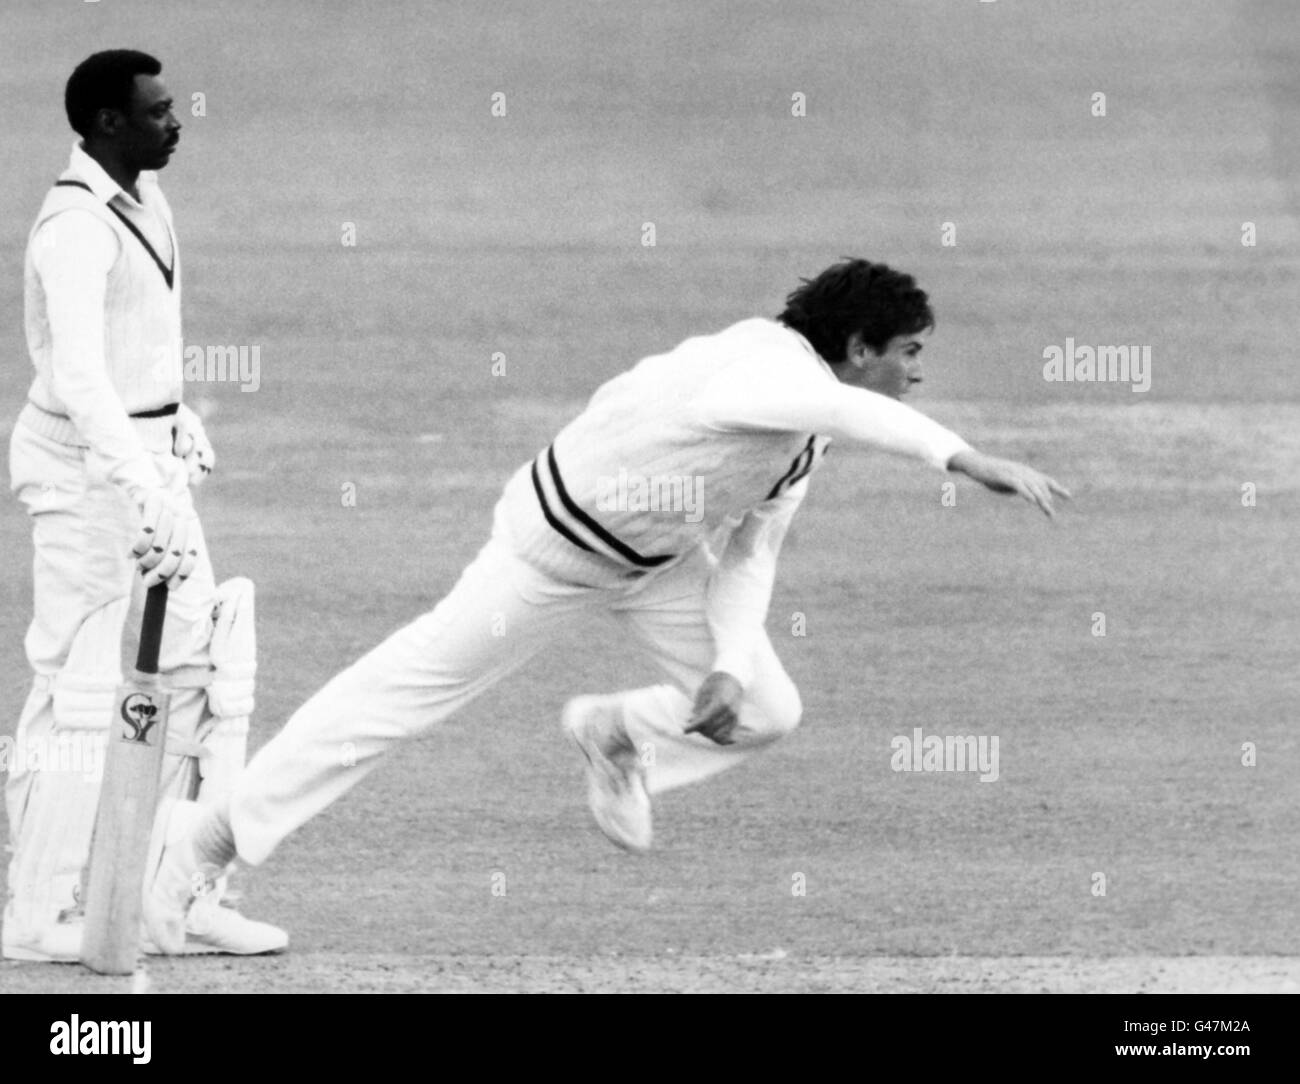 Cricket - finale della Coppa Benson e Hedges - Derbyshire / Hampshire - Lord's. Stephen Jefferies che ha permesso al suo fianco di battere Derby con sette wickets da risparmiare Foto Stock